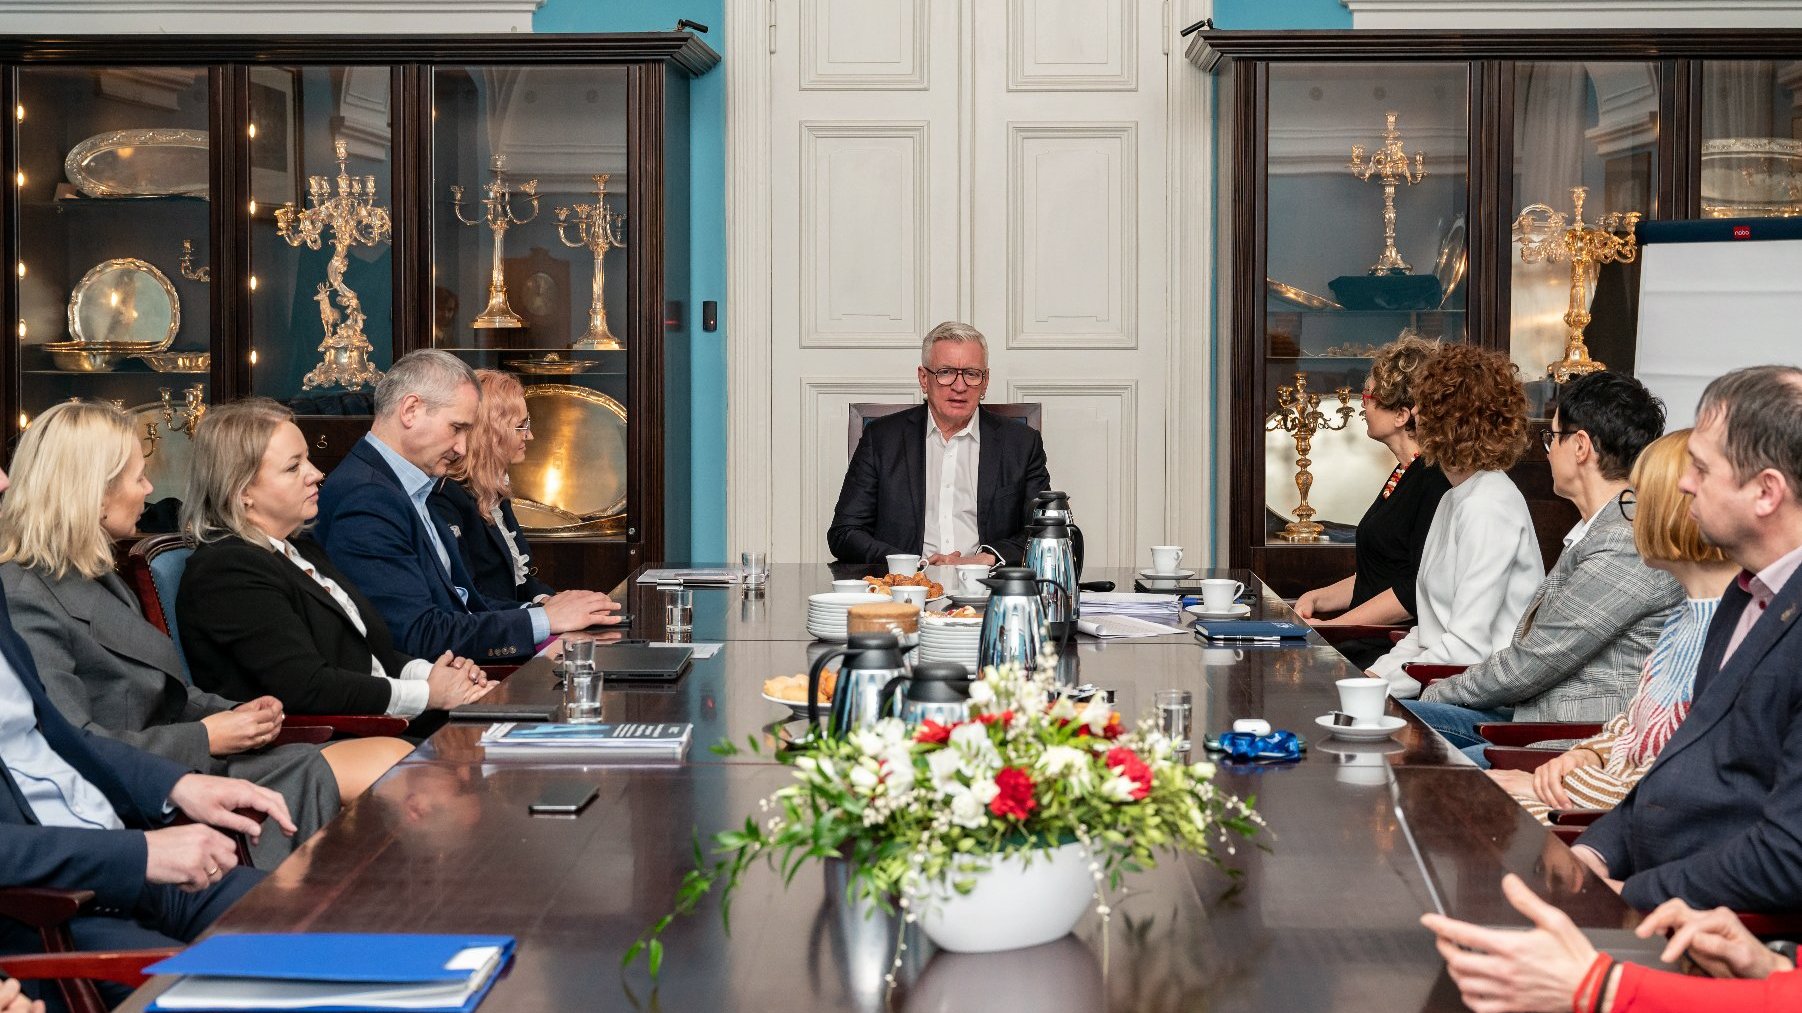 Na zdjeciu grupa ludzi za stołem, u szczytu stołu siedzi prezydent Poznania